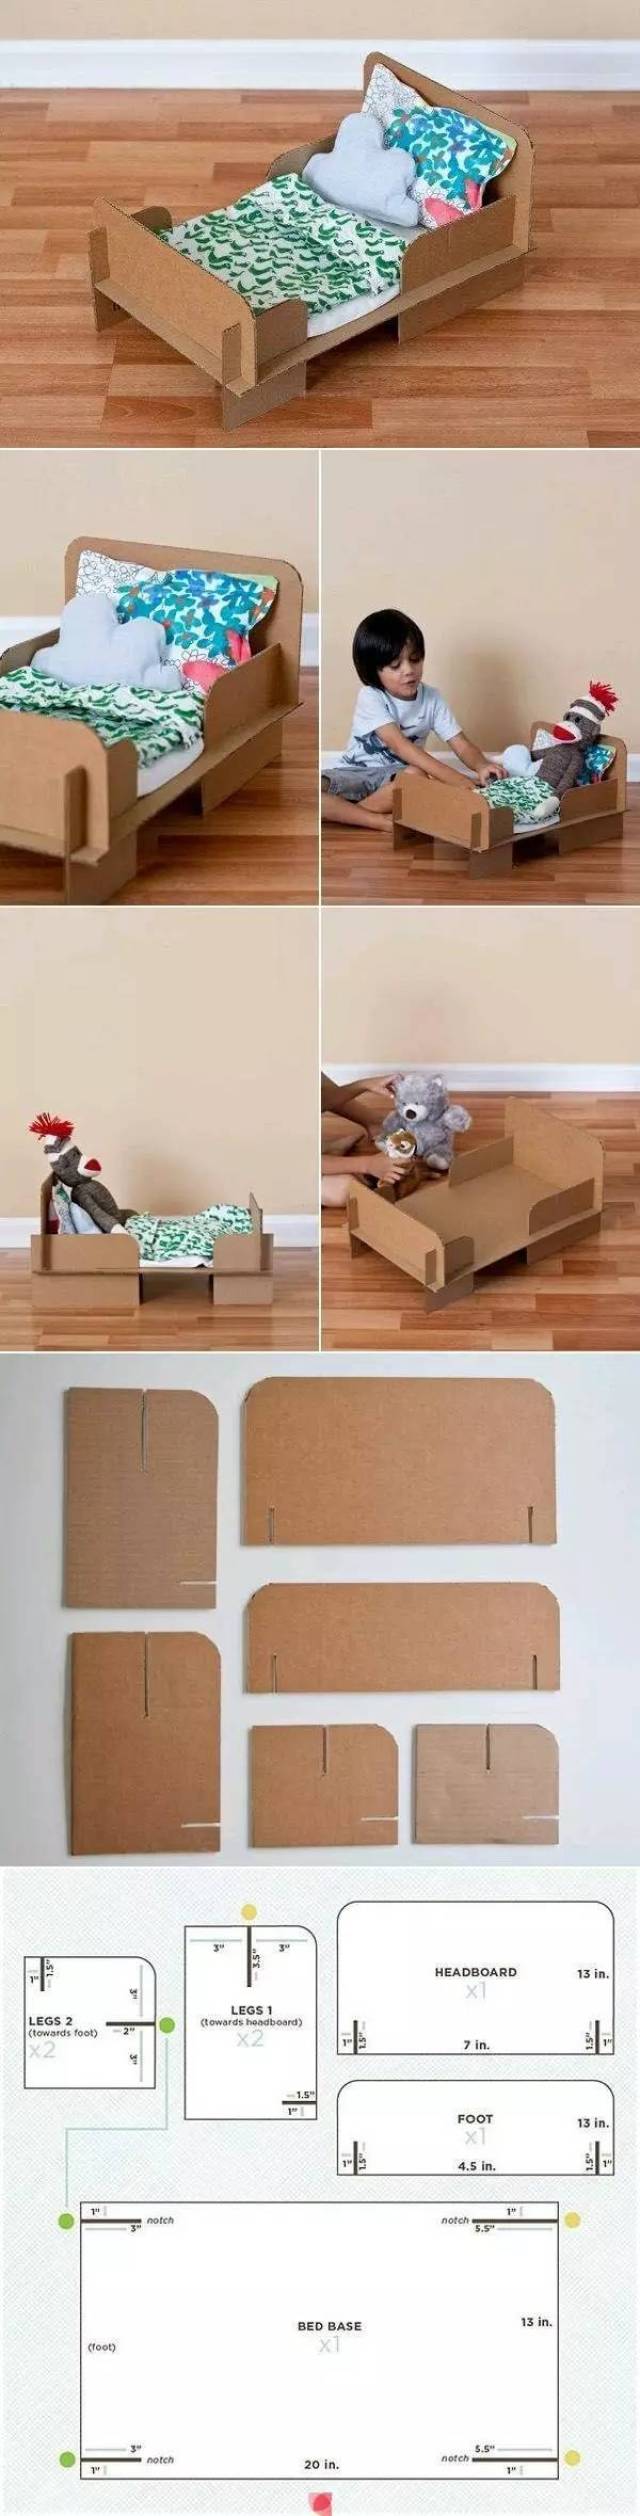 【创意】旧纸箱diy出孩子怎么玩也玩不厌的玩具!